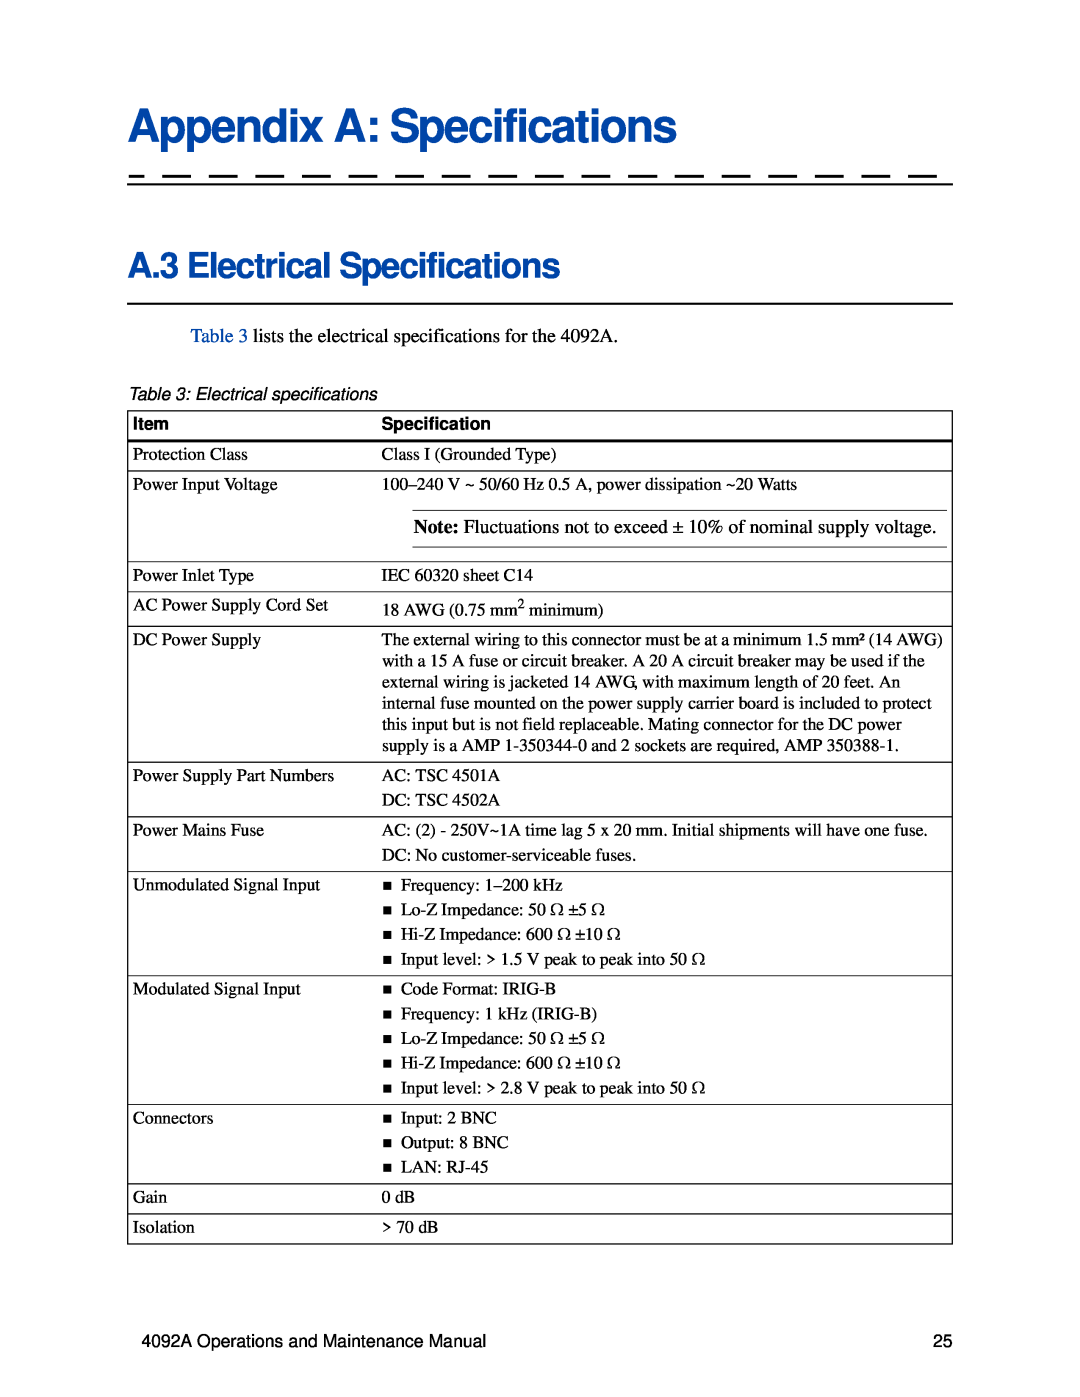 Lantronix 4092A IRIG-B manual Appendix A Specifications, A.3 Electrical Specifications, Electrical specifications 